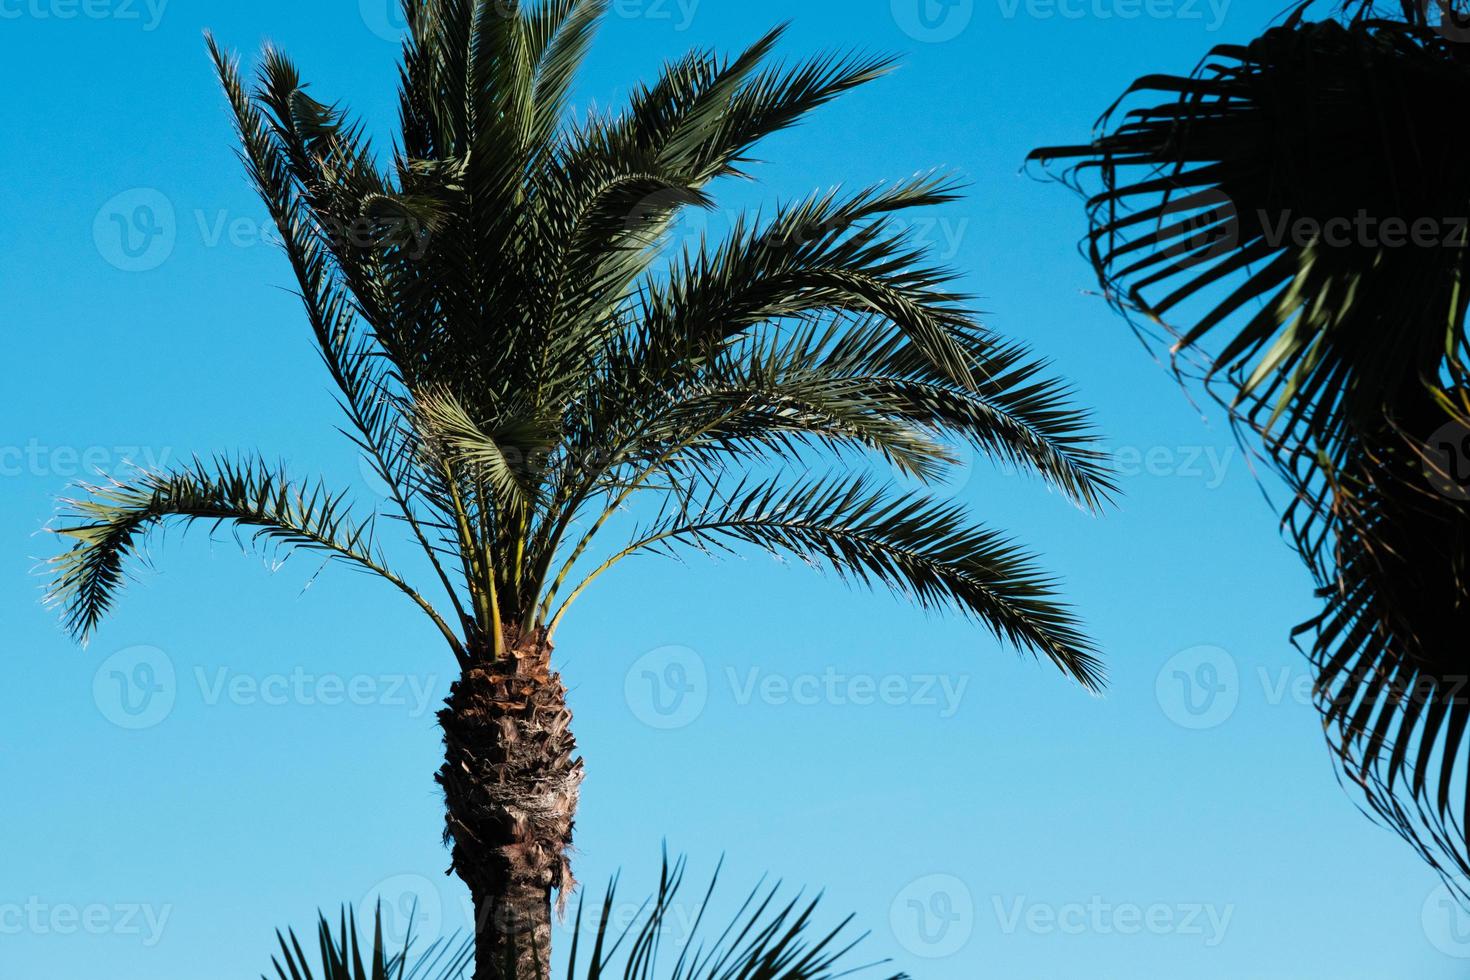 palmiers au vent contre un ciel bleu sur la plage d'été, cocotier, plante tropicale, palmiers verts exotiques sur l'île par une journée ensoleillée. photo